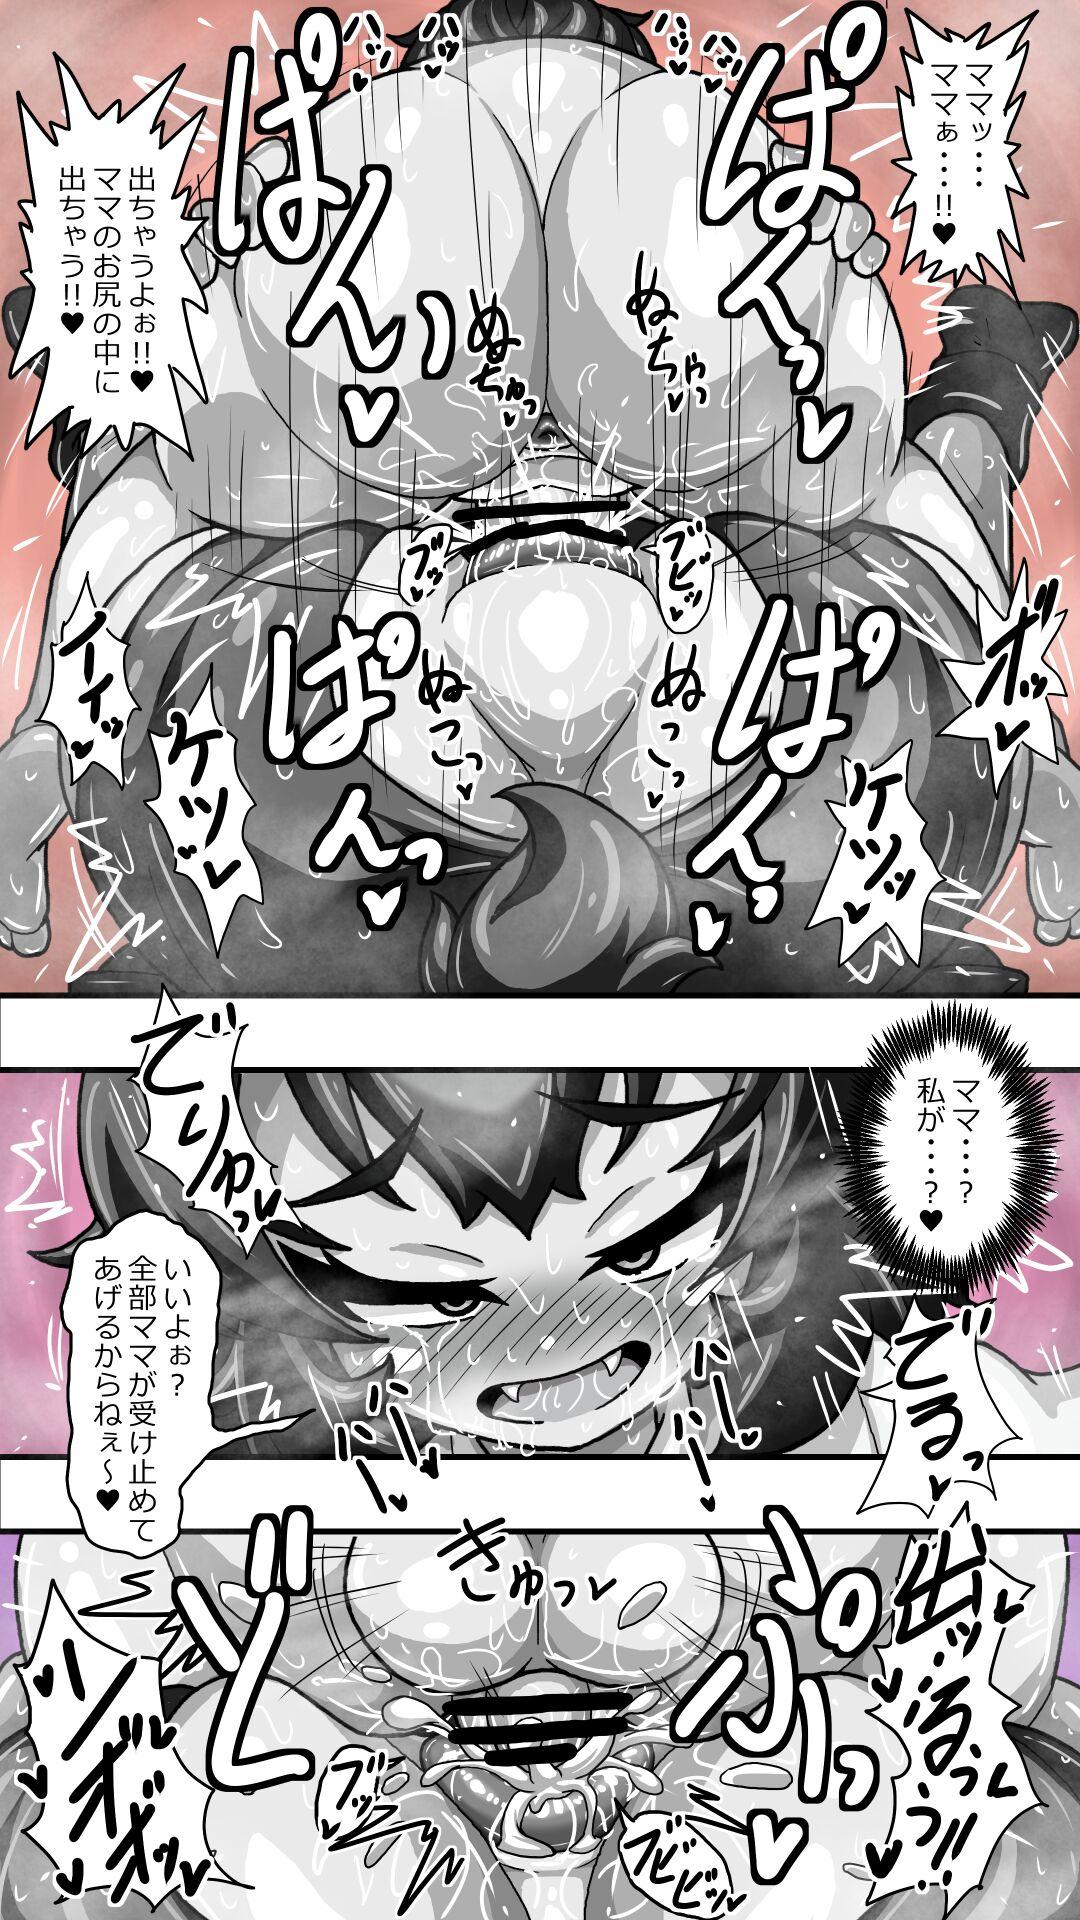 【再掲】ヒグママとショタ隊長のアナルえっち16P漫画収集版 14